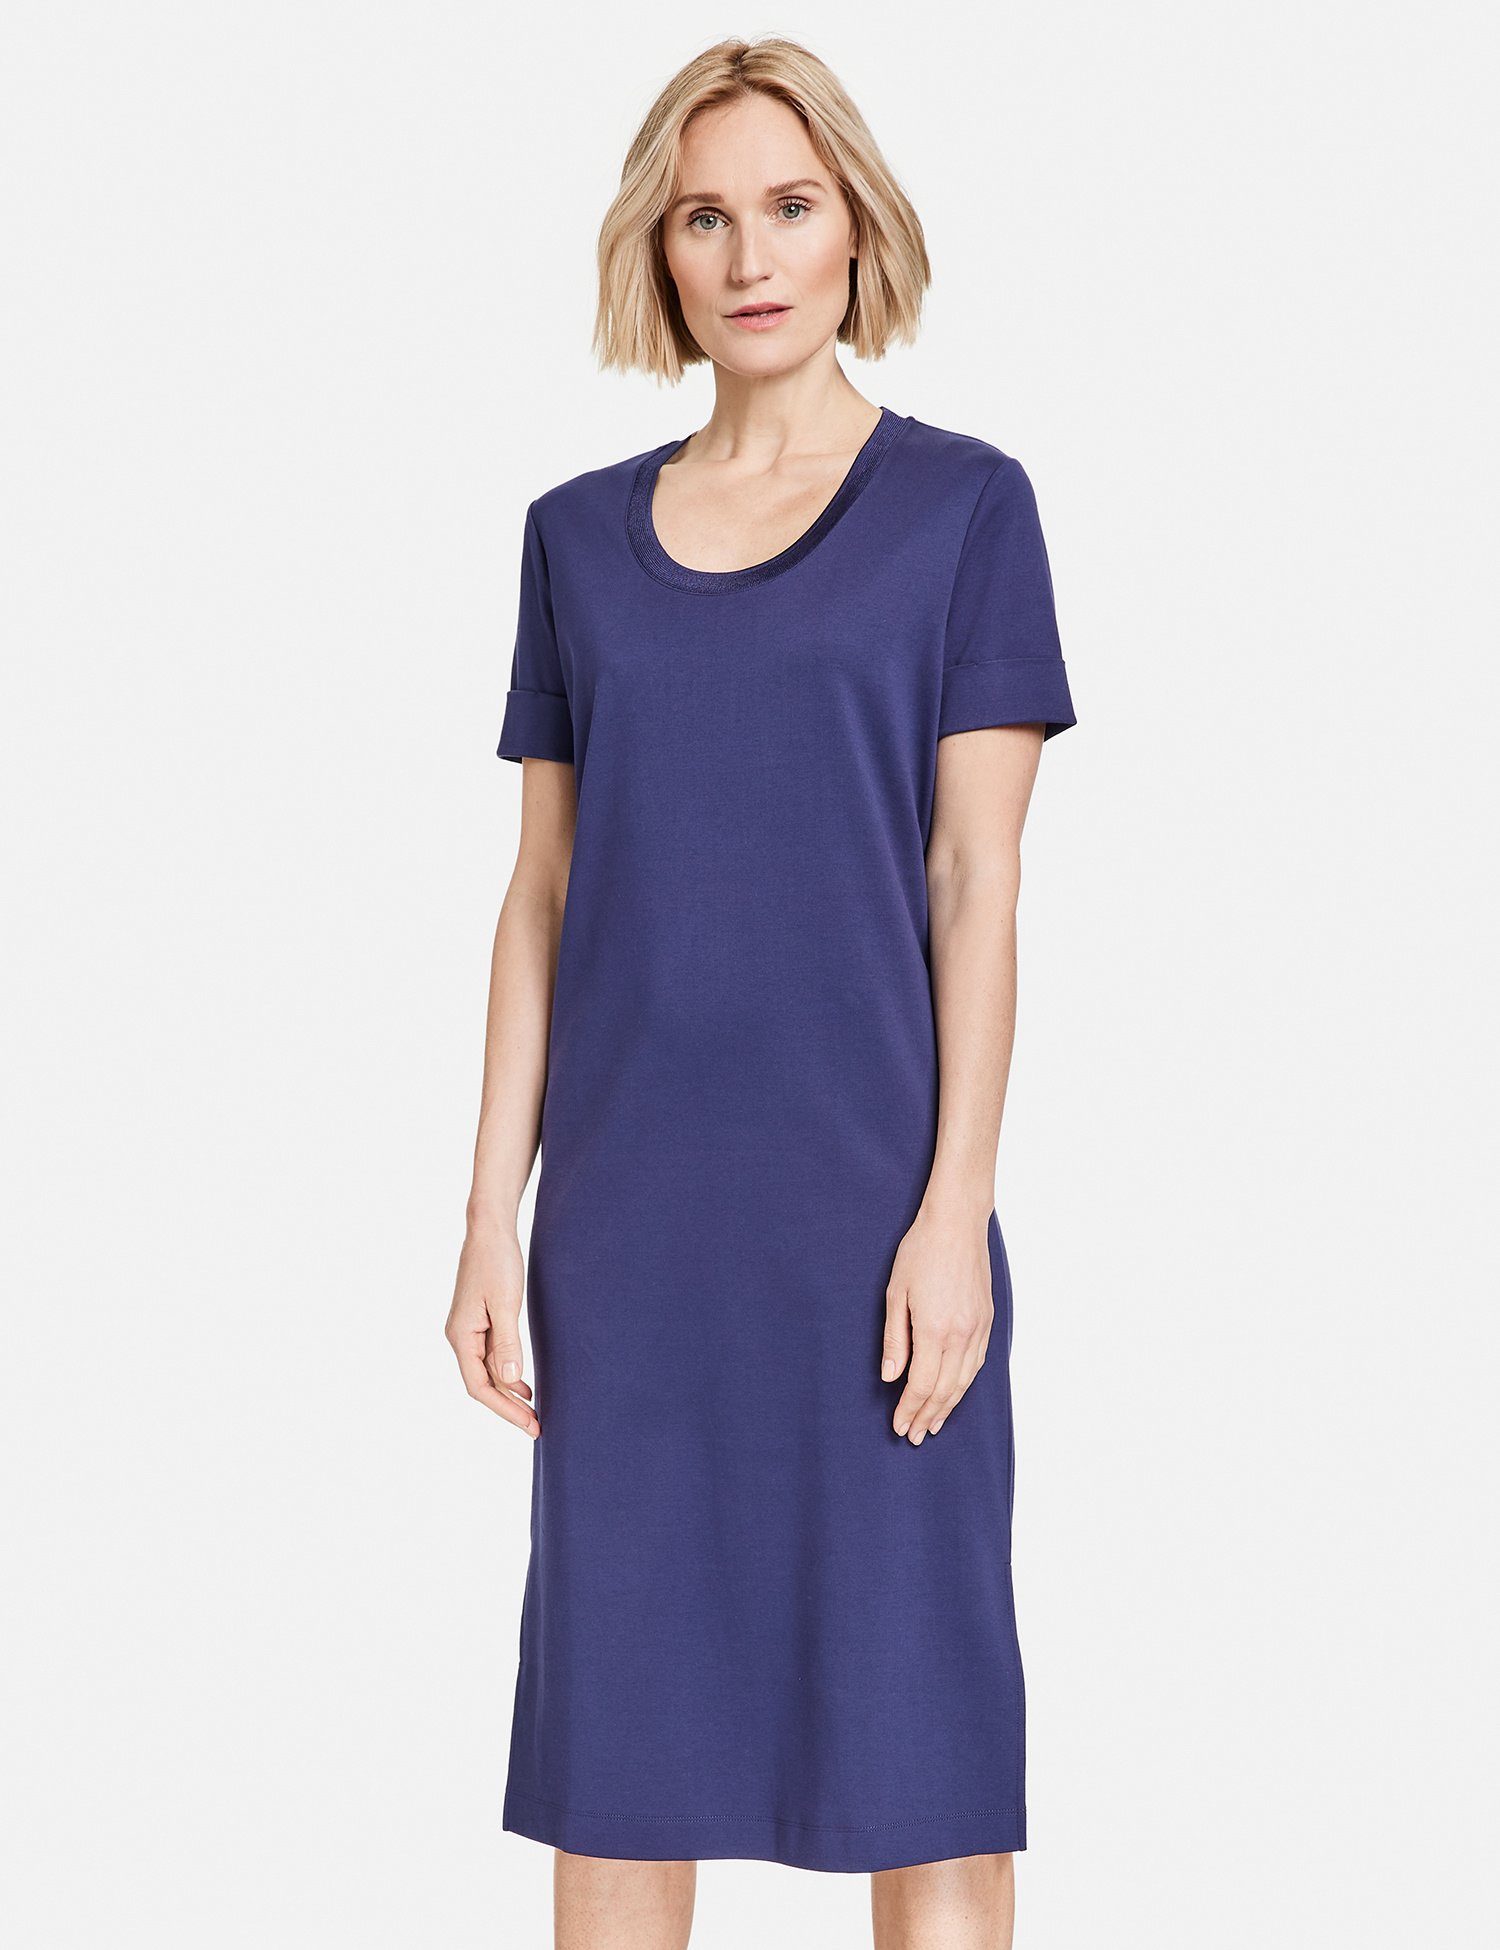 GERRY WEBER Midikleid Schlichtes Kleid mit schimmerndem Ausschnitt Blueberry